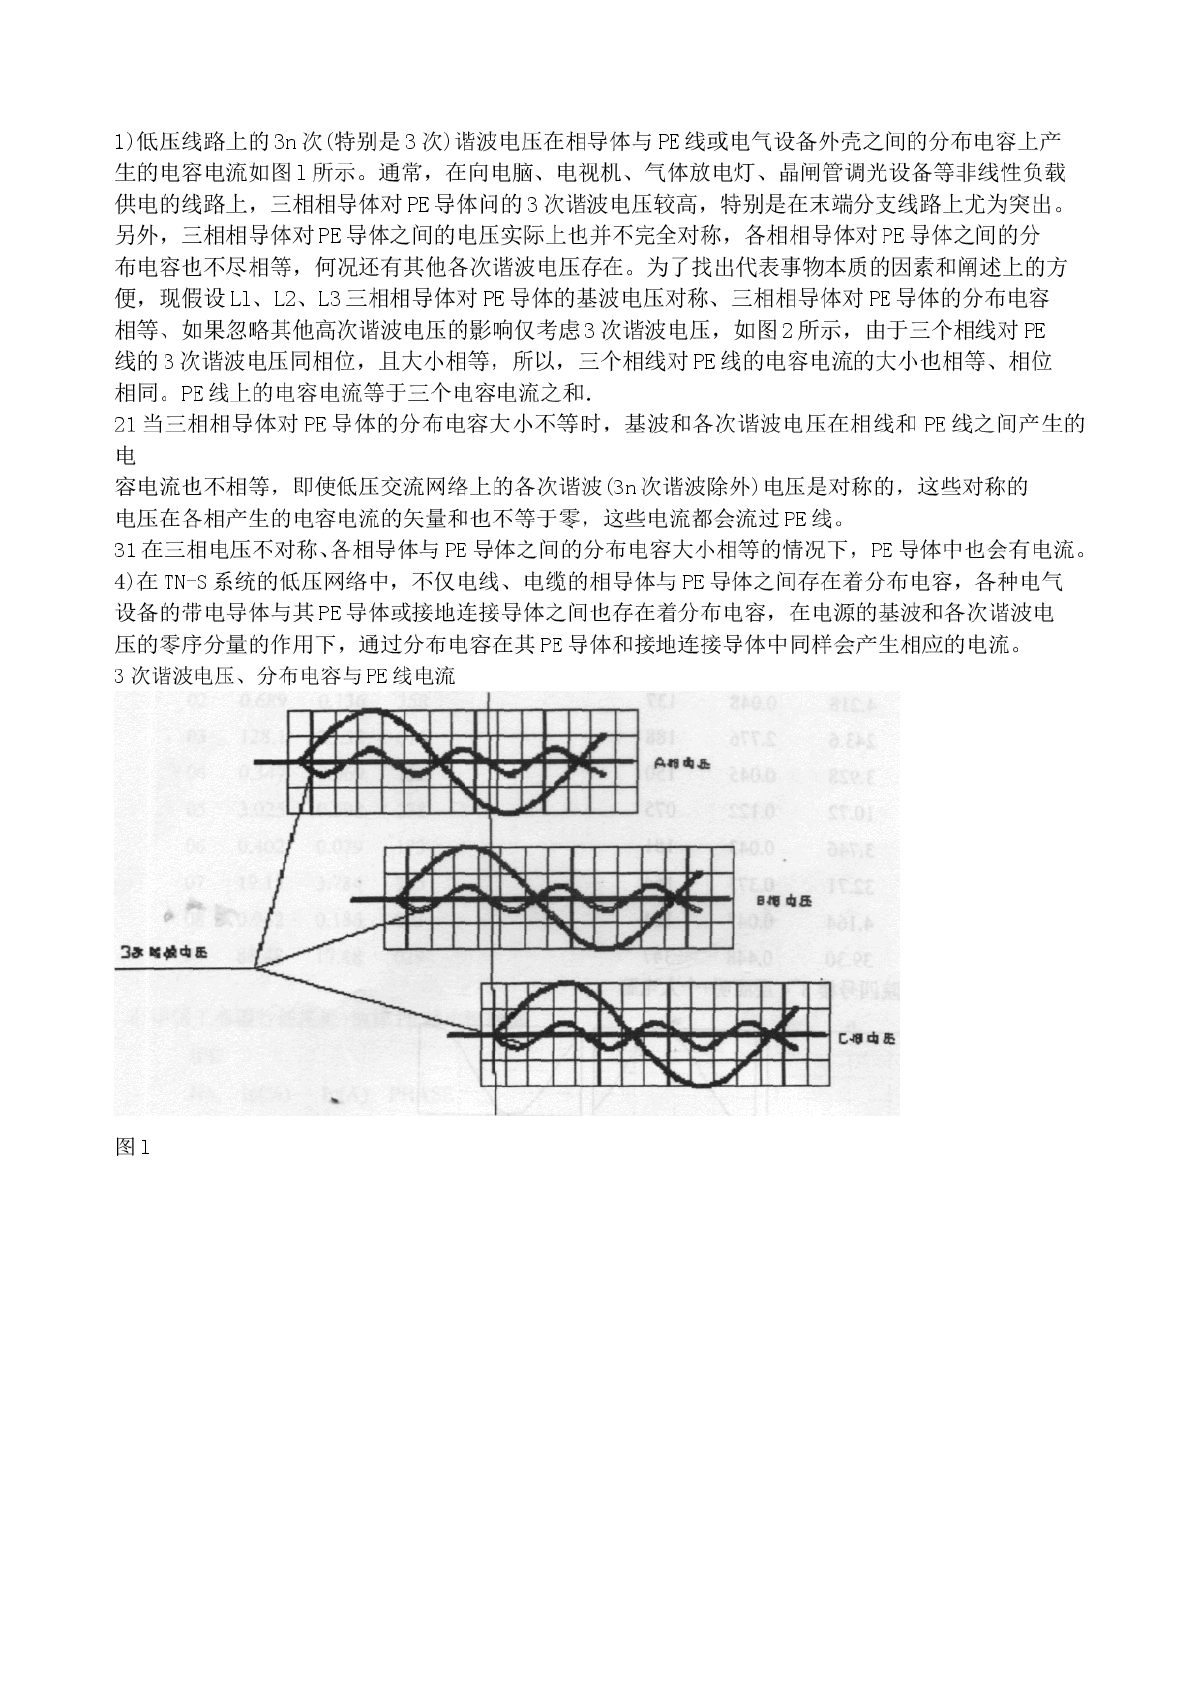 TN-S系统谐波与漏电电流-图二